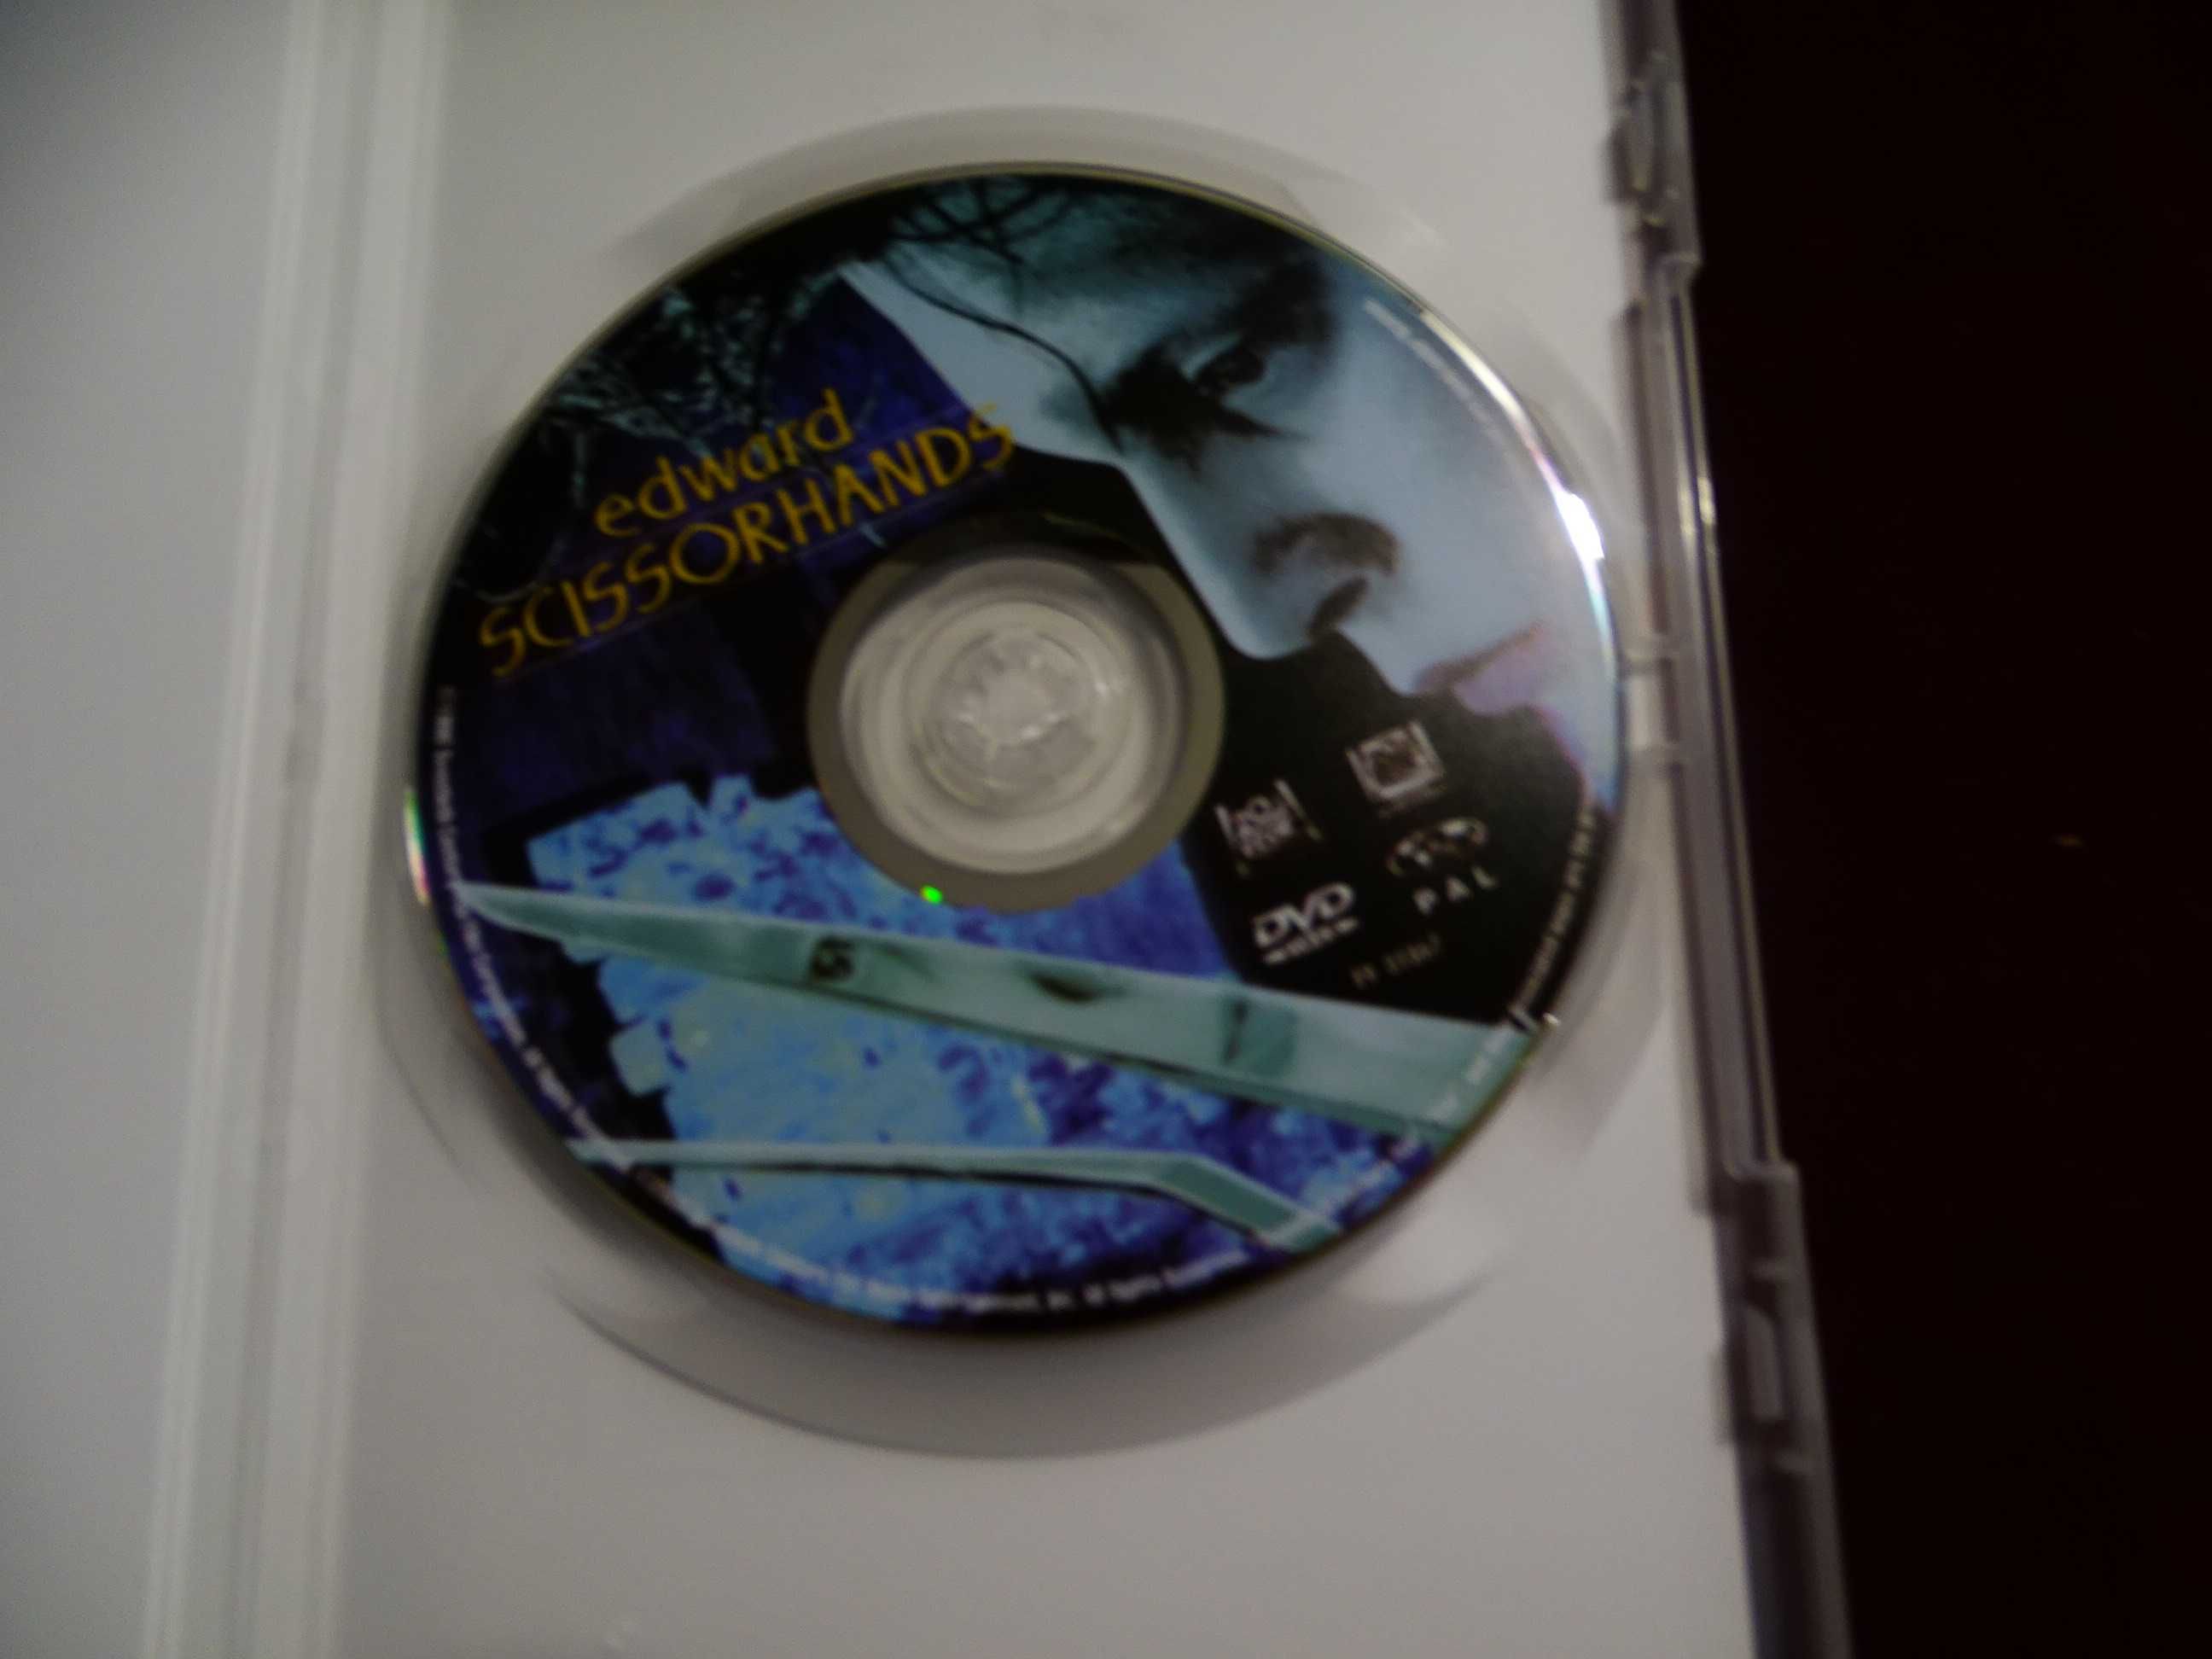 DVD-Eduardo mãos de tesoura-Tim Burton/Johnny Depp